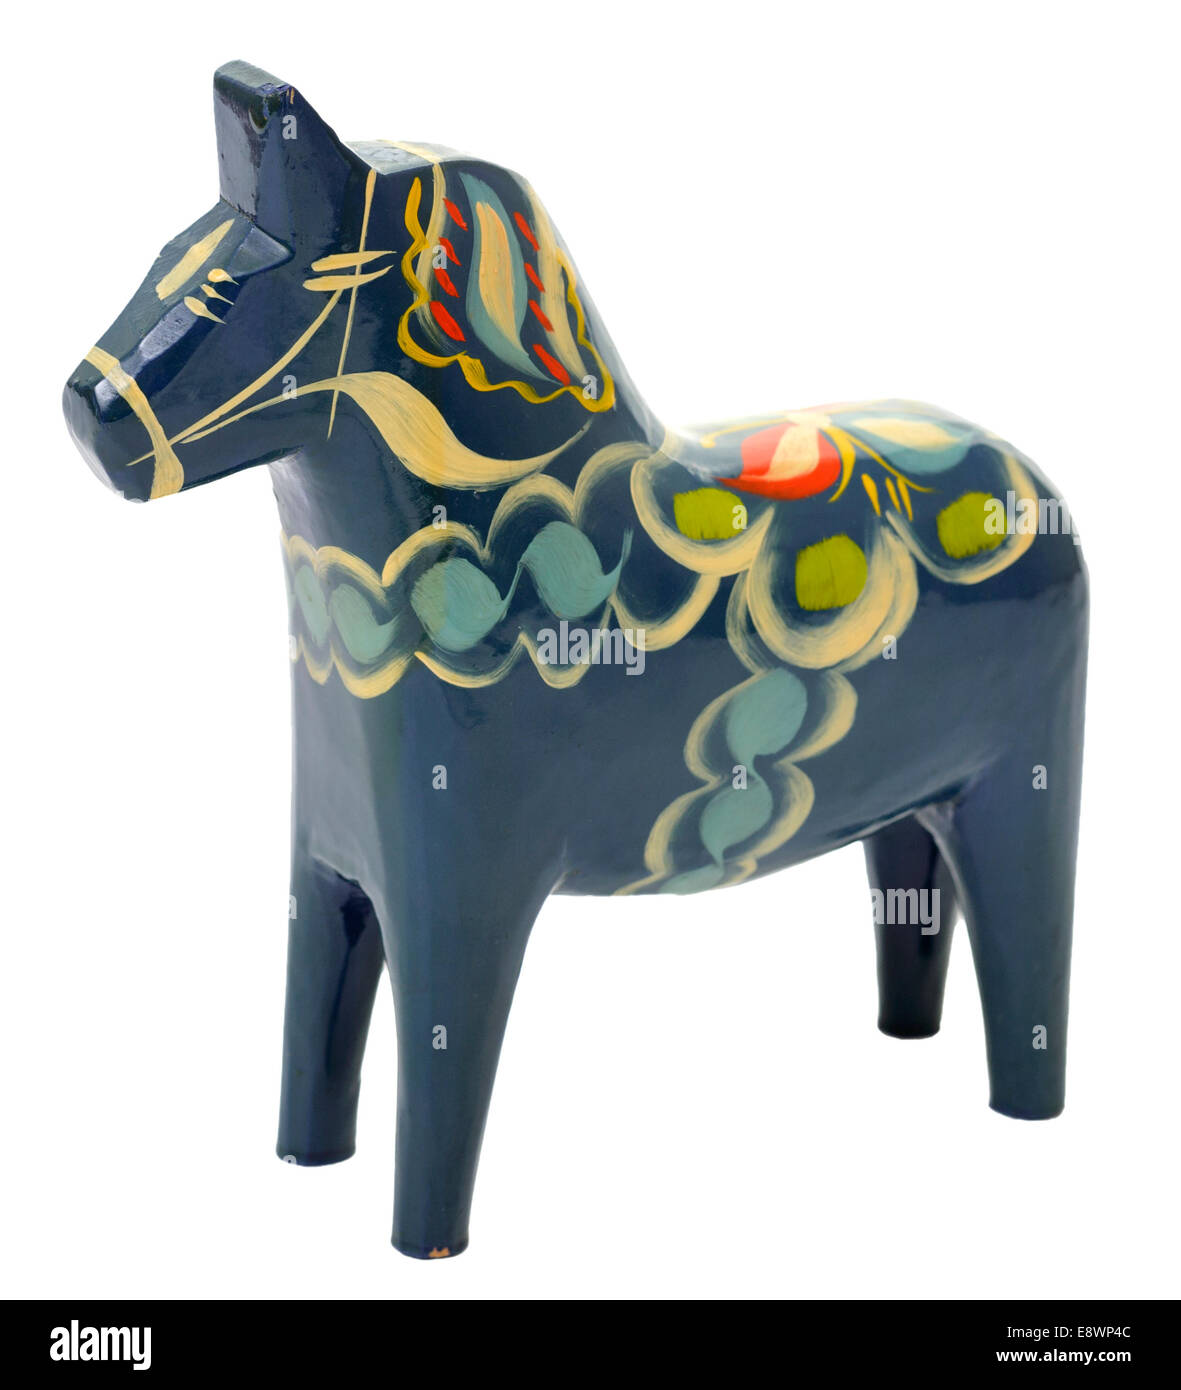 Ein Dalarna Pferd oder Dala Pferd (Dalahäst) ist ein traditionelles geschnitzt, bemalt hölzerne Pferd Statuette in der schwedischen Provinz Dalarna mit Ursprung. Model Release: Nein Property Release: Nein. Stockfoto